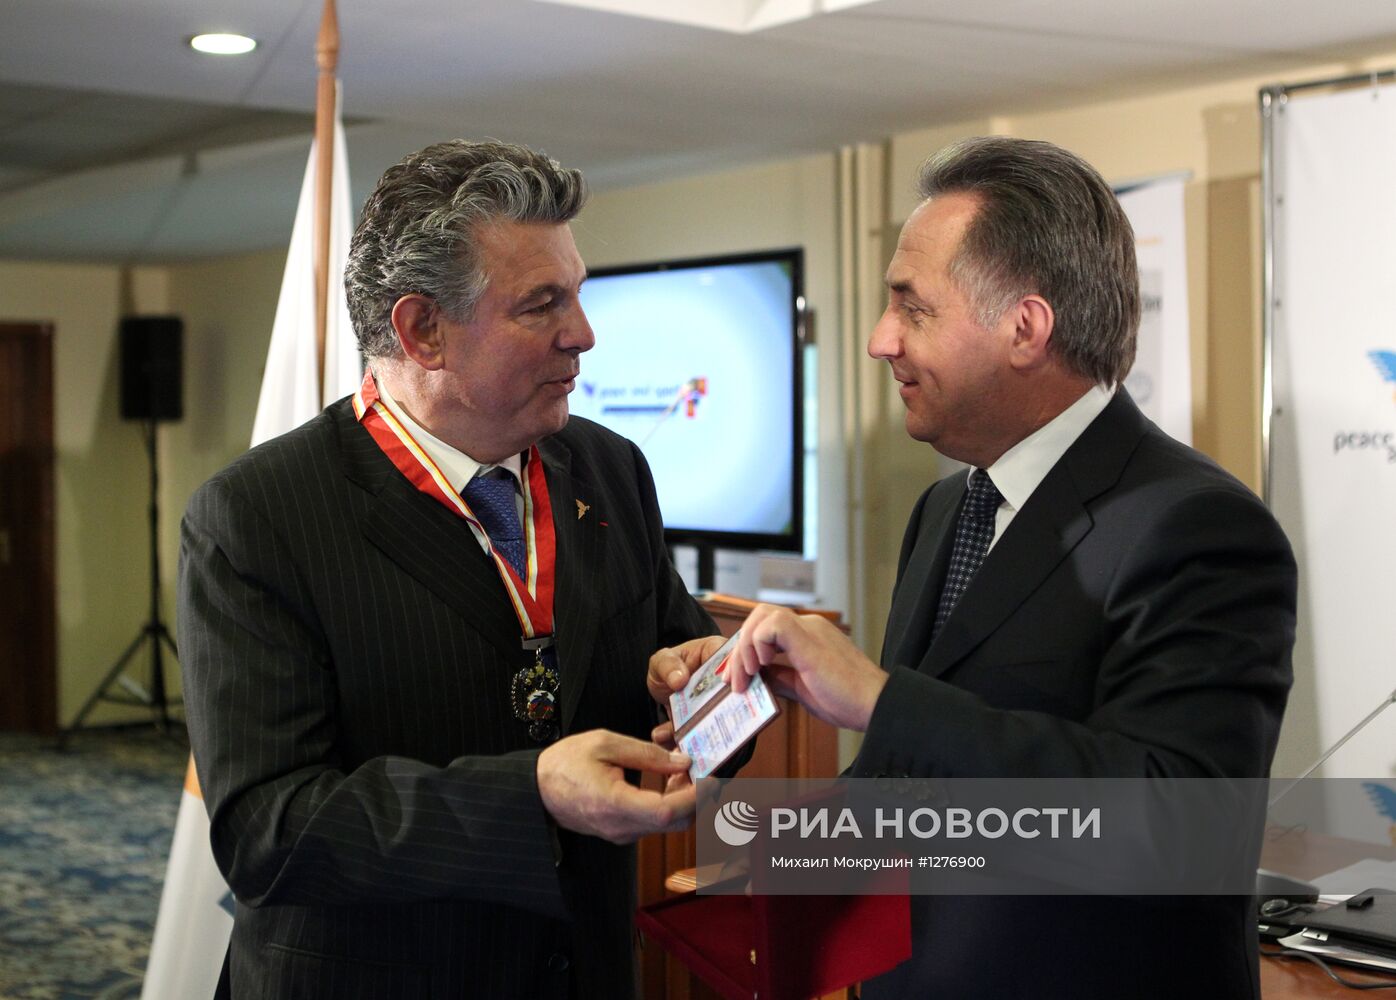 Открытие международного форума "Мир и Спорт" в Красной Поляне